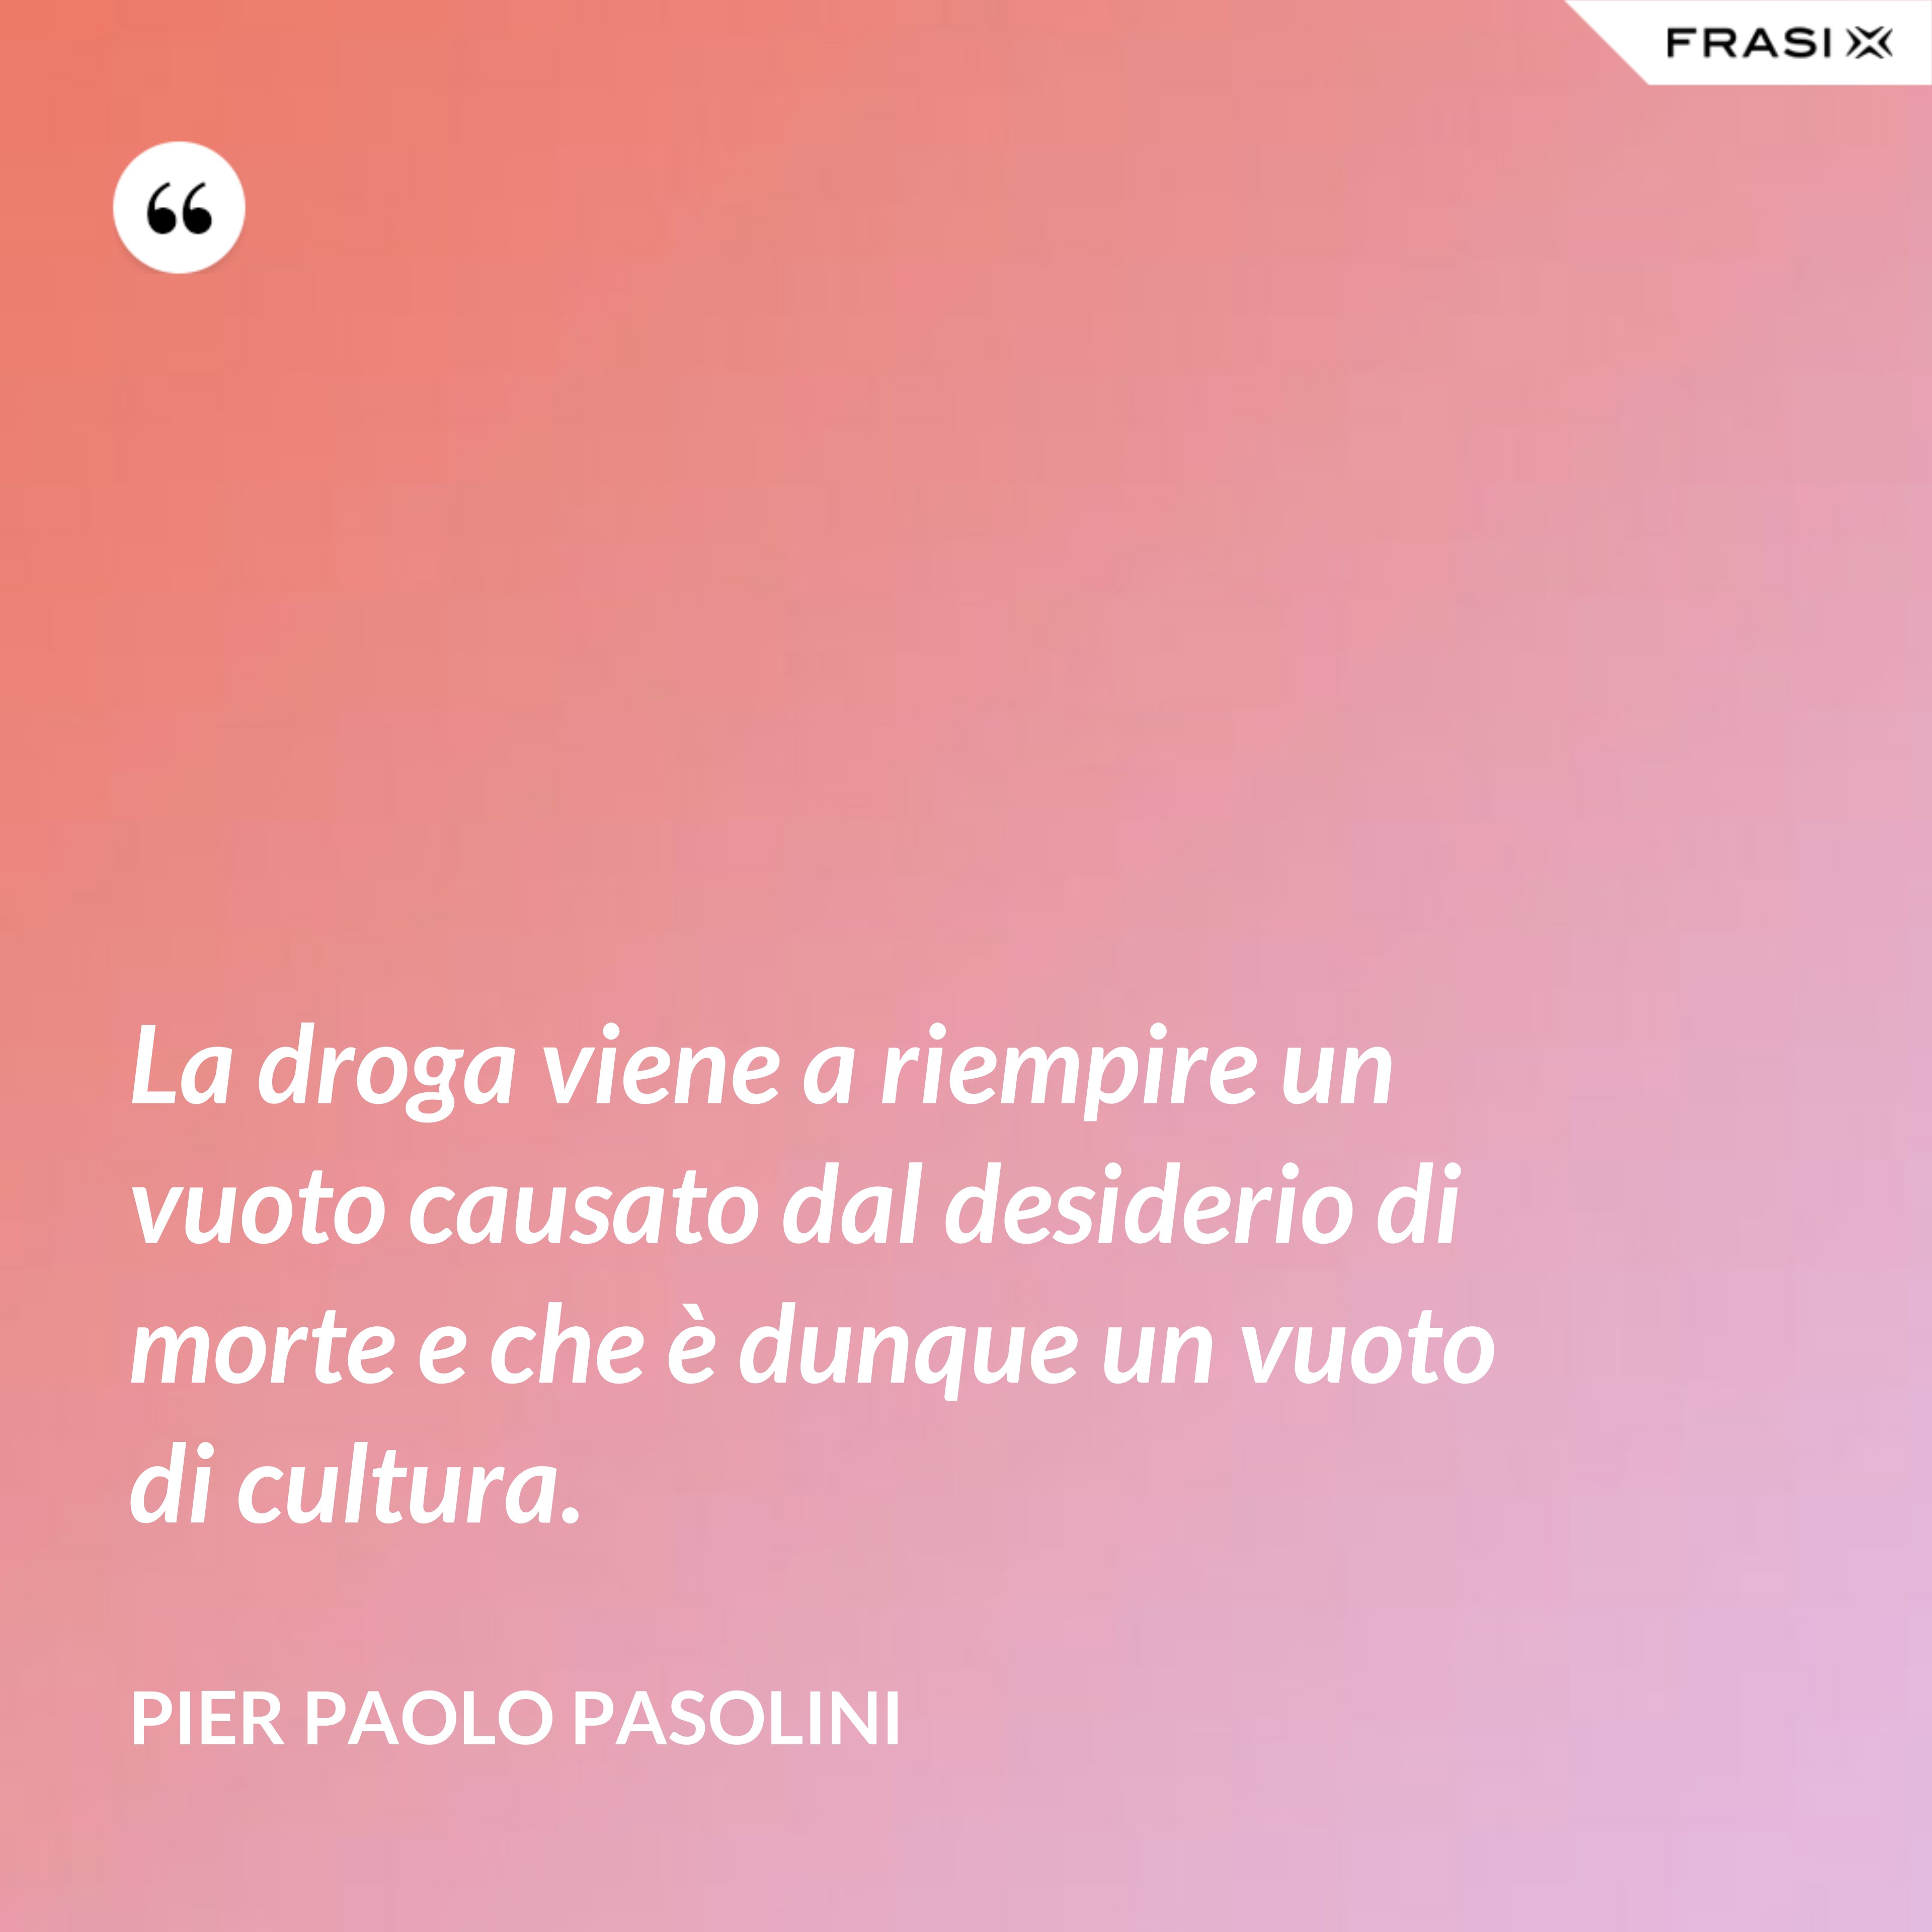 La droga viene a riempire un vuoto causato dal desiderio di morte e che è dunque un vuoto di cultura. - Pier Paolo Pasolini